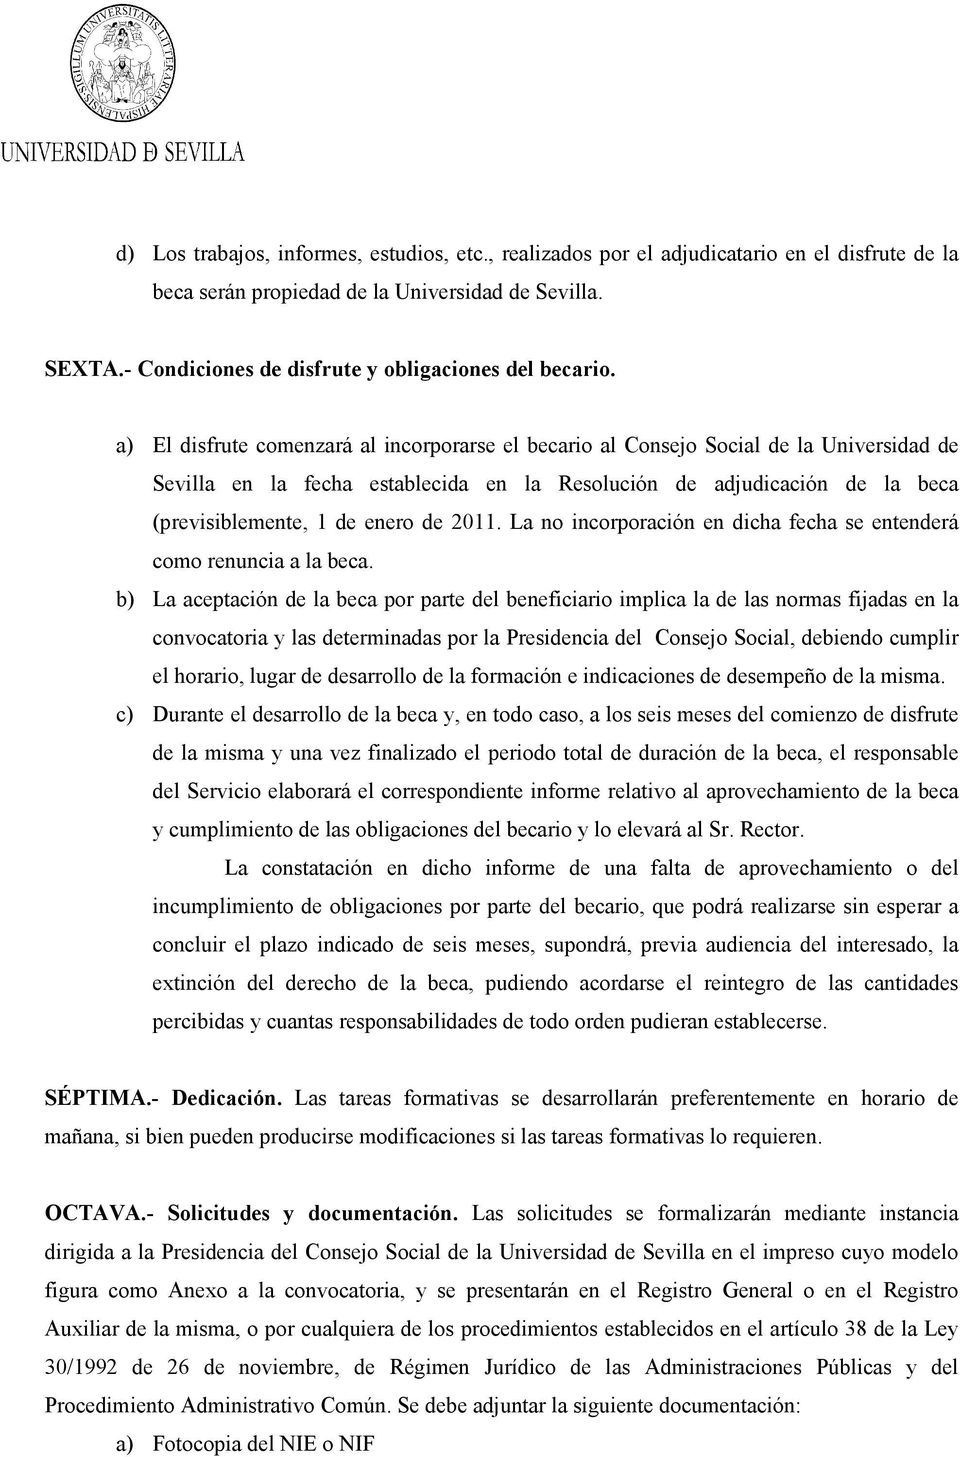 a) El disfrute comenzará al incorporarse el becario al Consejo Social de la Universidad de Sevilla en la fecha establecida en la Resolución de adjudicación de la beca (previsiblemente, 1 de enero de